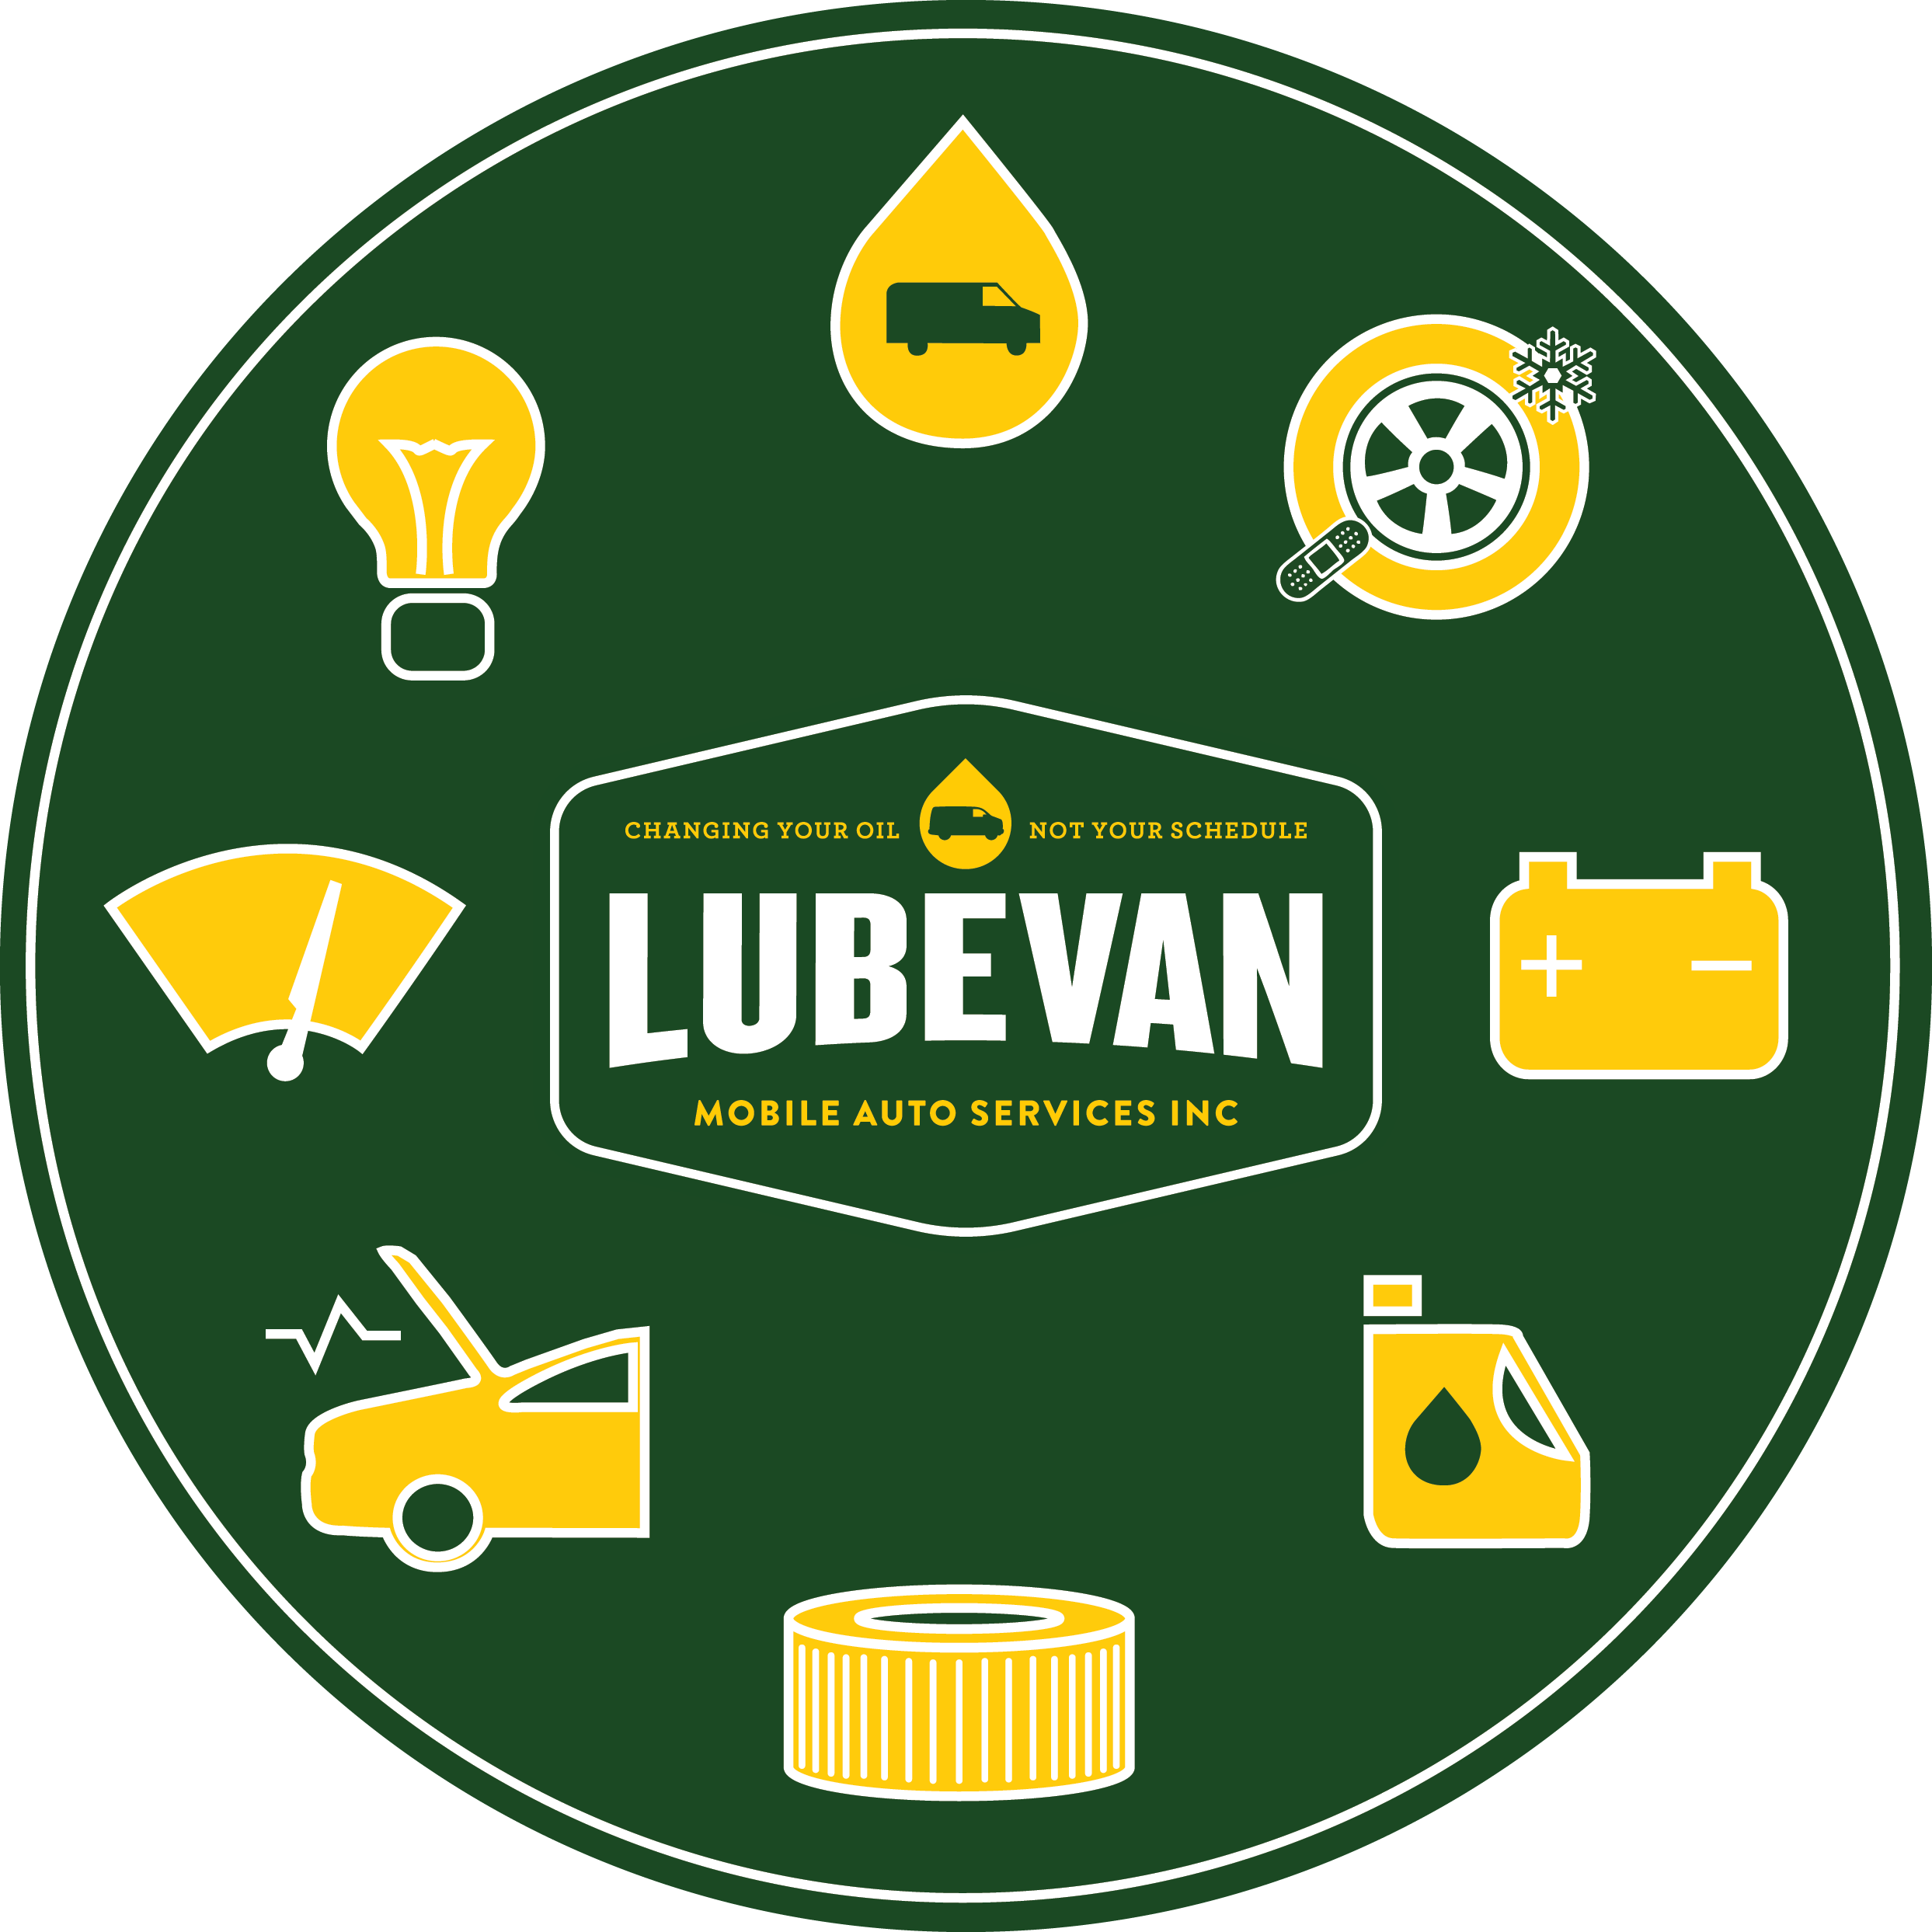 Lube Van Services